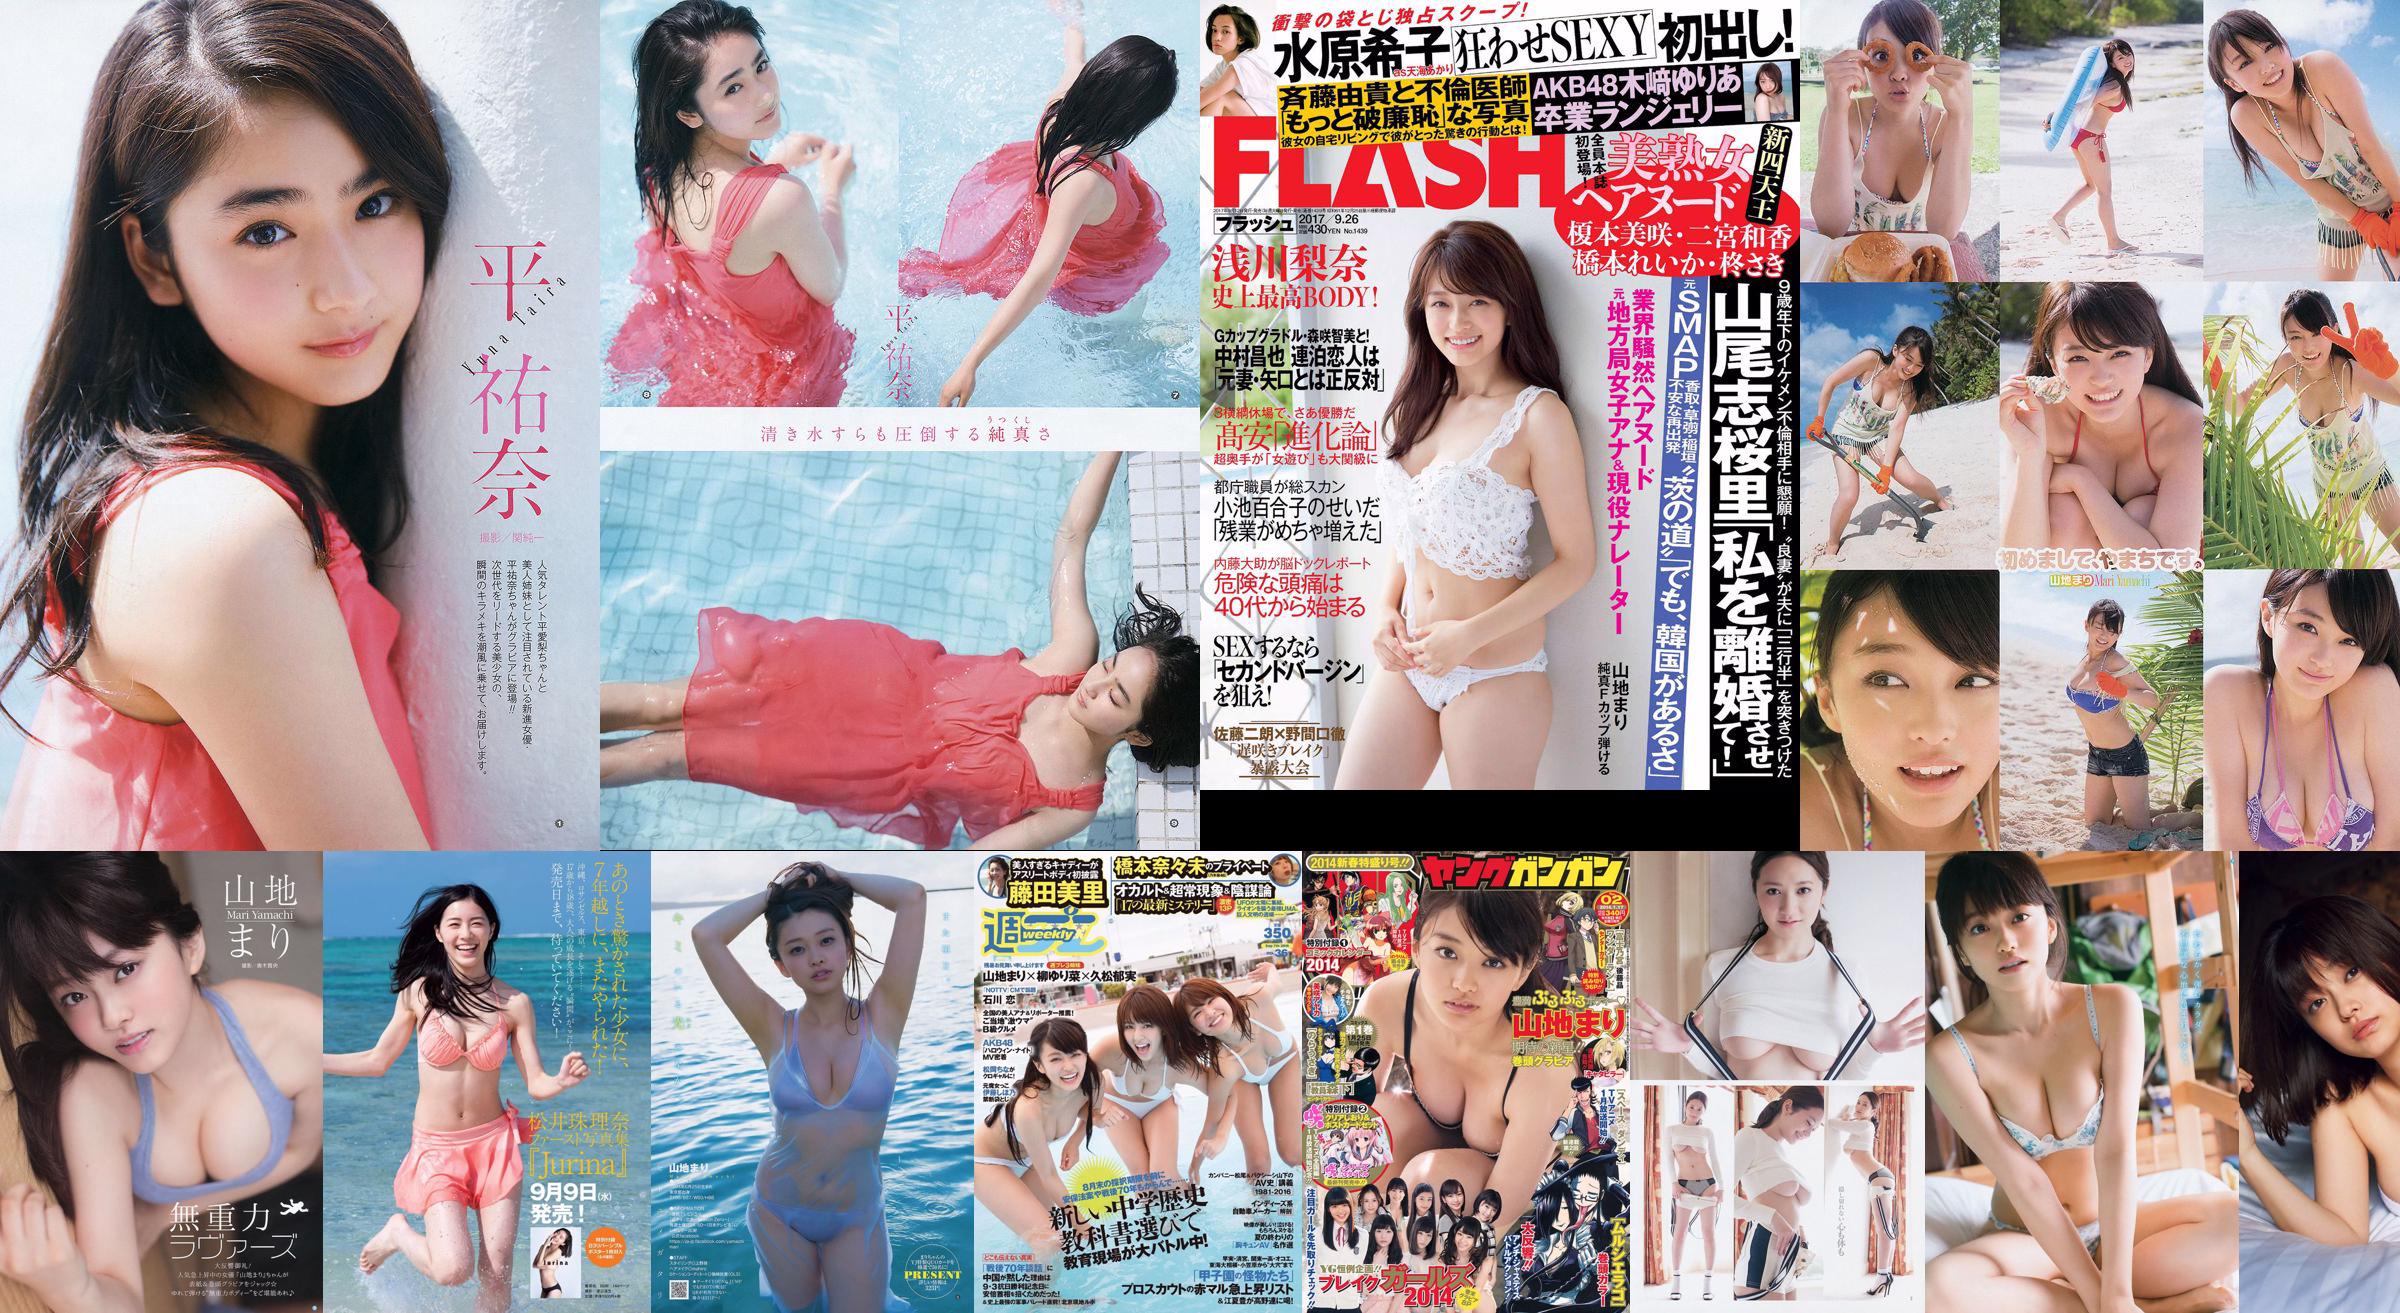 Mari Yamachi Yume Hazuki [Weekly Young Jump] Magazine photo n ° 34 2014 No.5e20f2 Page 4